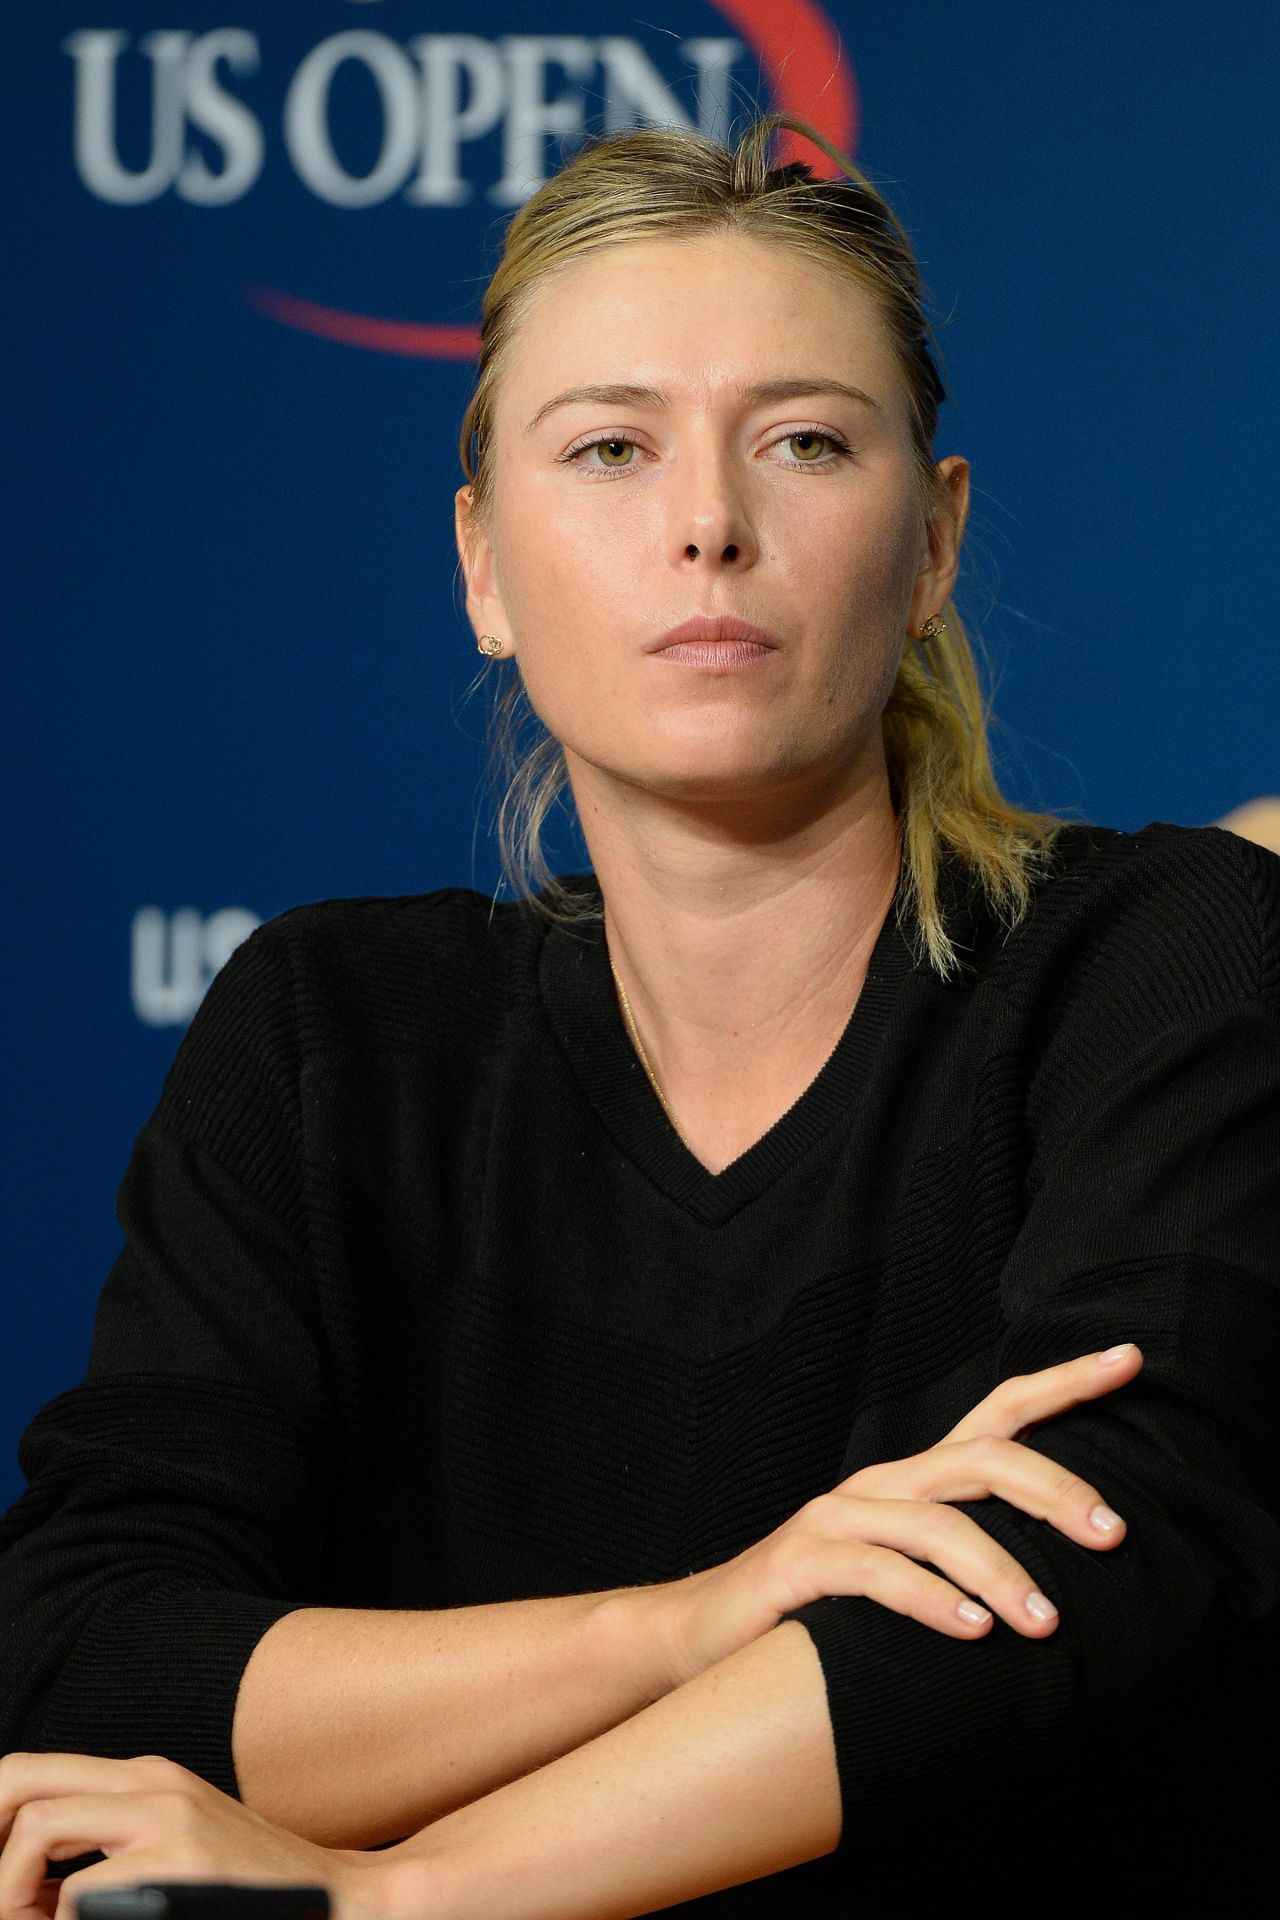 Maria Sharapova - 2014 US Open in New York City - Press Conference ...